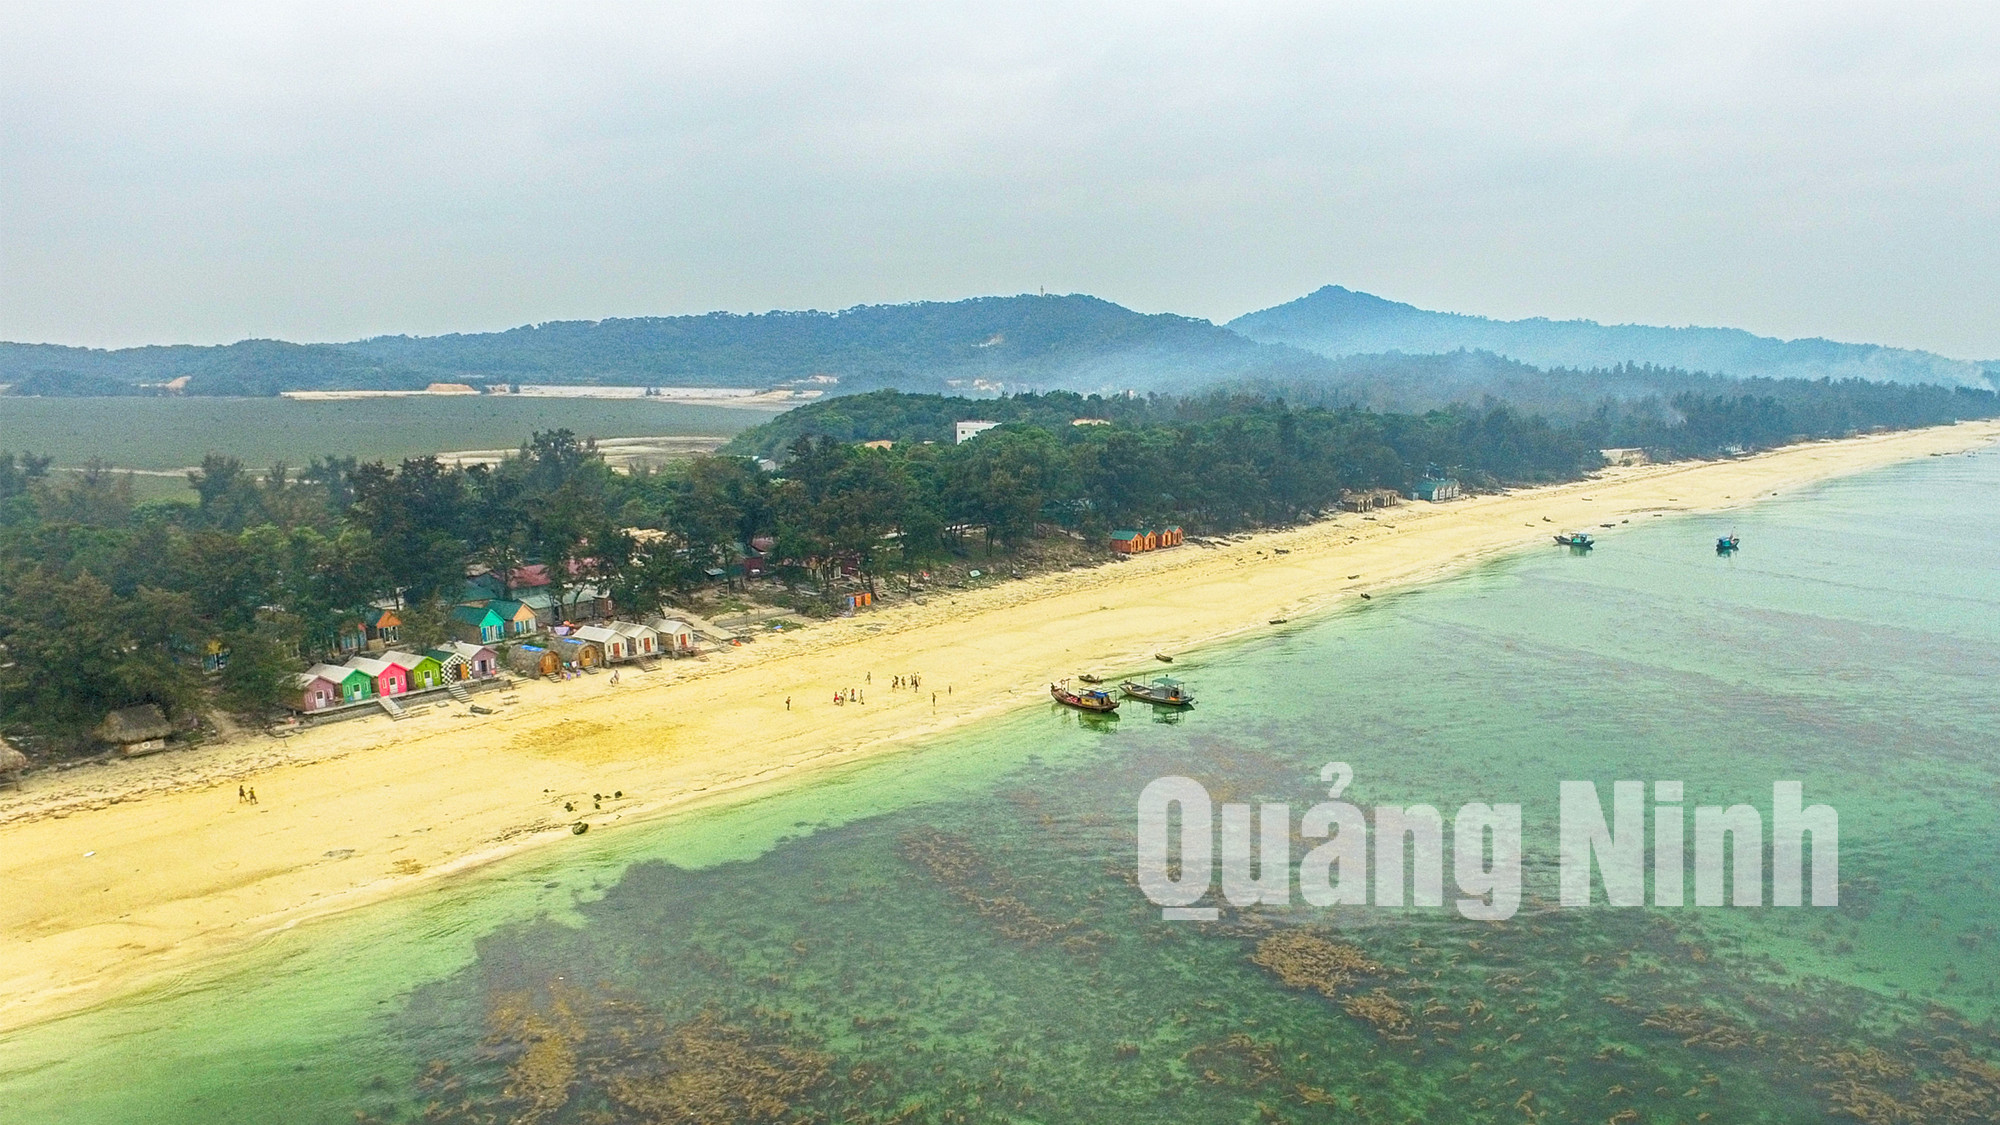 Bãi biển Cô Tô với bãi biển trải dài, hoang sơ nhuộm cát vàng và nước biển xanh ngắt. Ảnh: Hùng Sơn